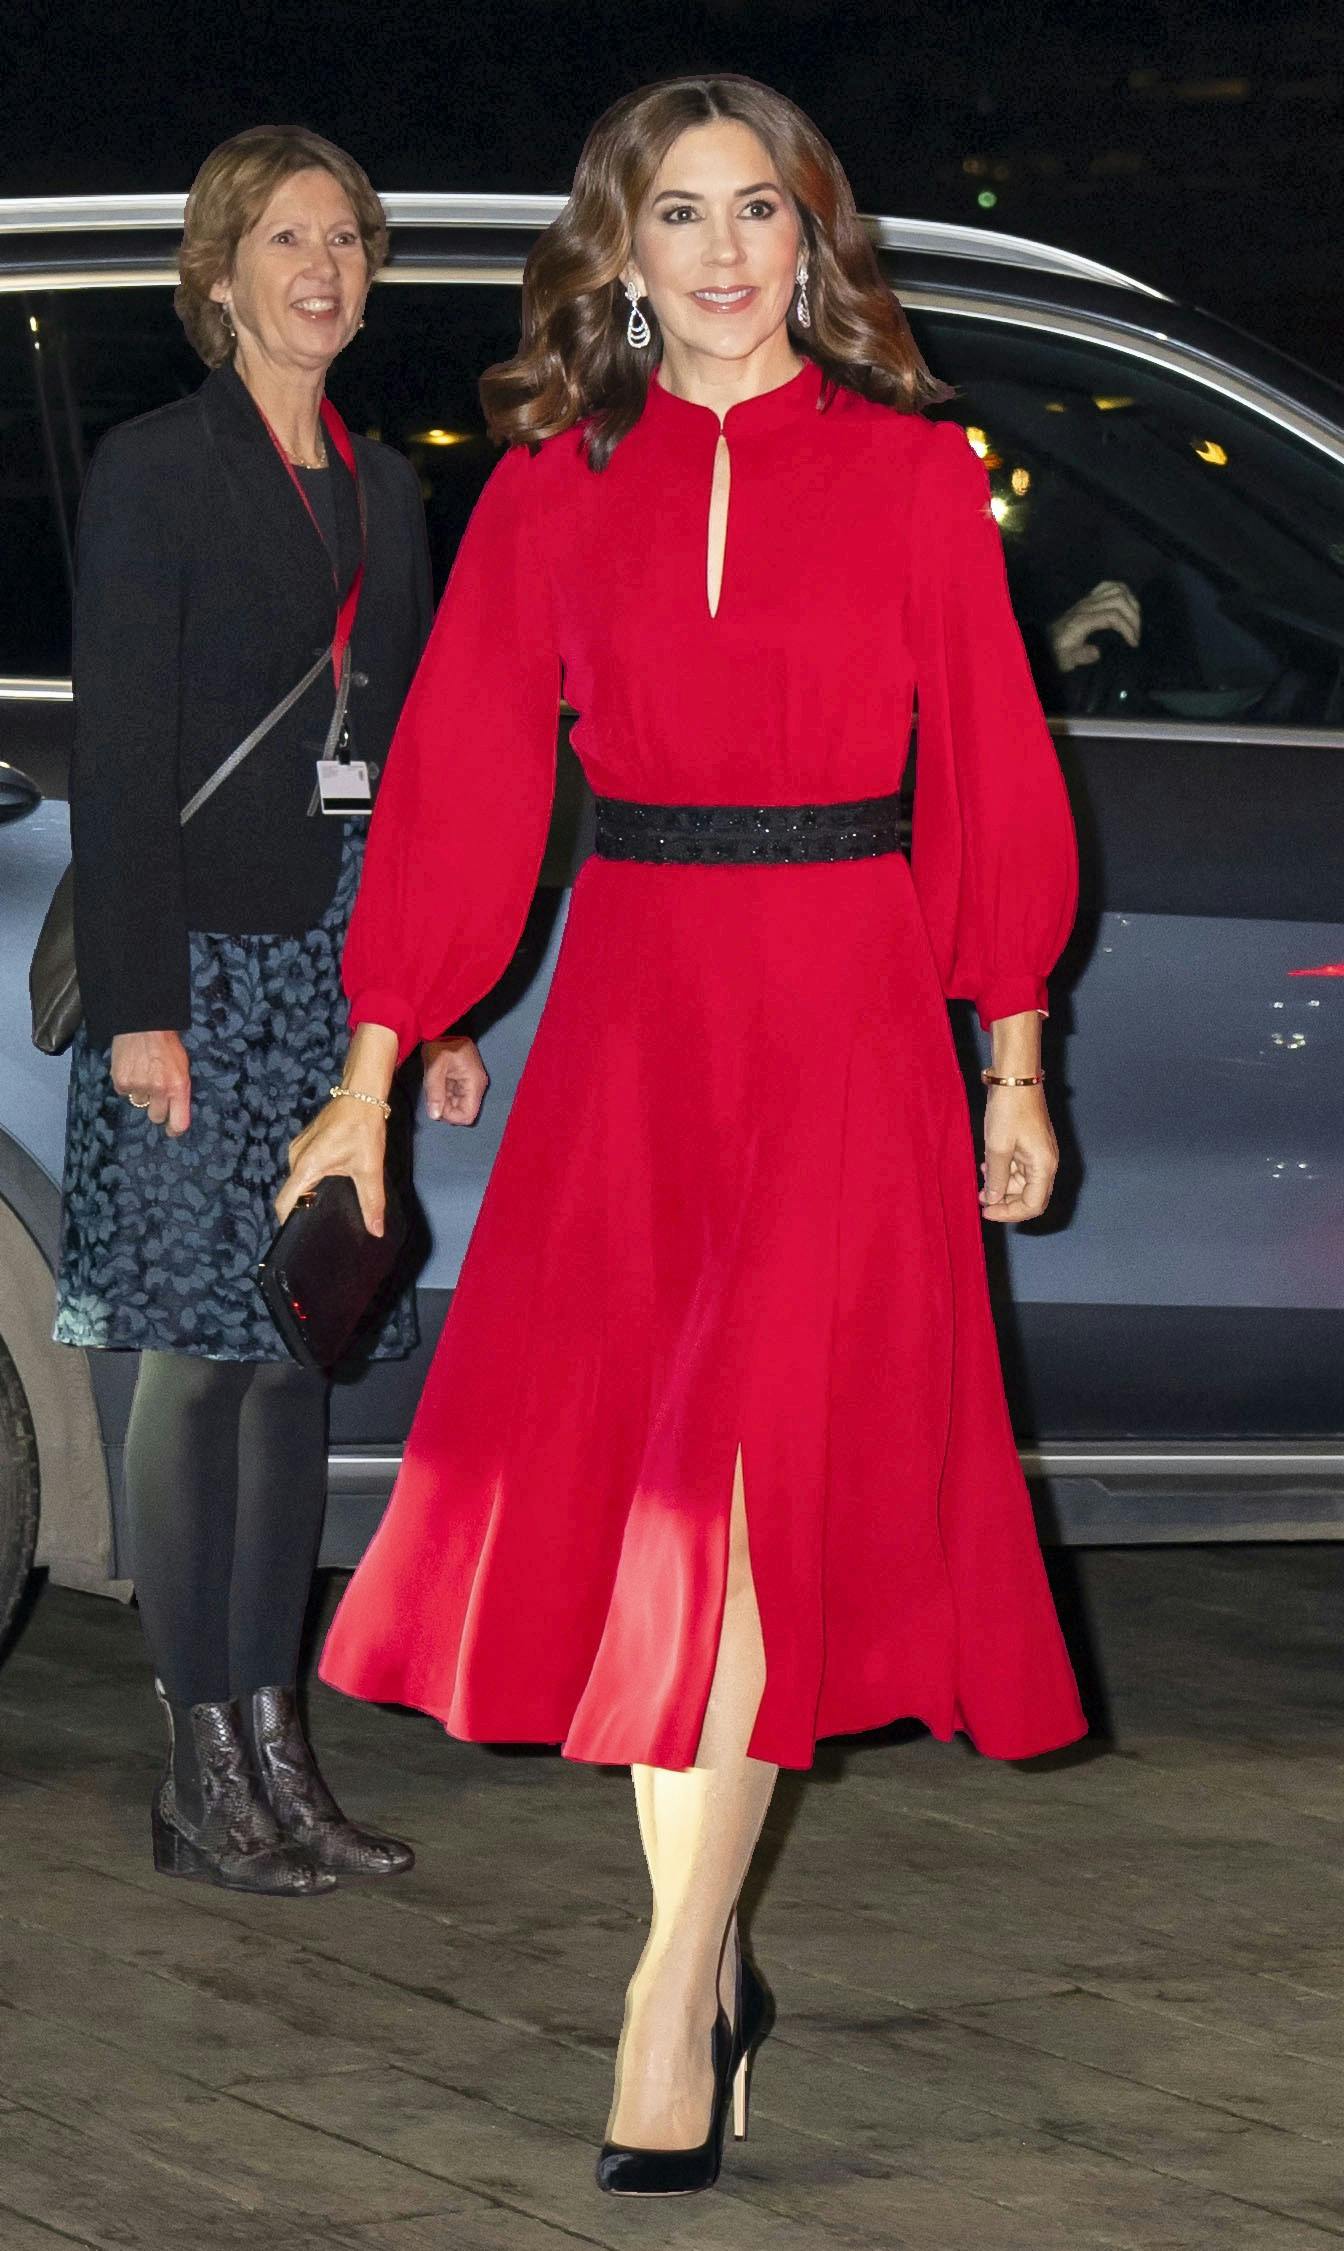 Høj eksponering Erhverv Elegance Klæder og smykker for over 377.000: Kronprinsesse Mary er dyr i drift | SE  og HØR